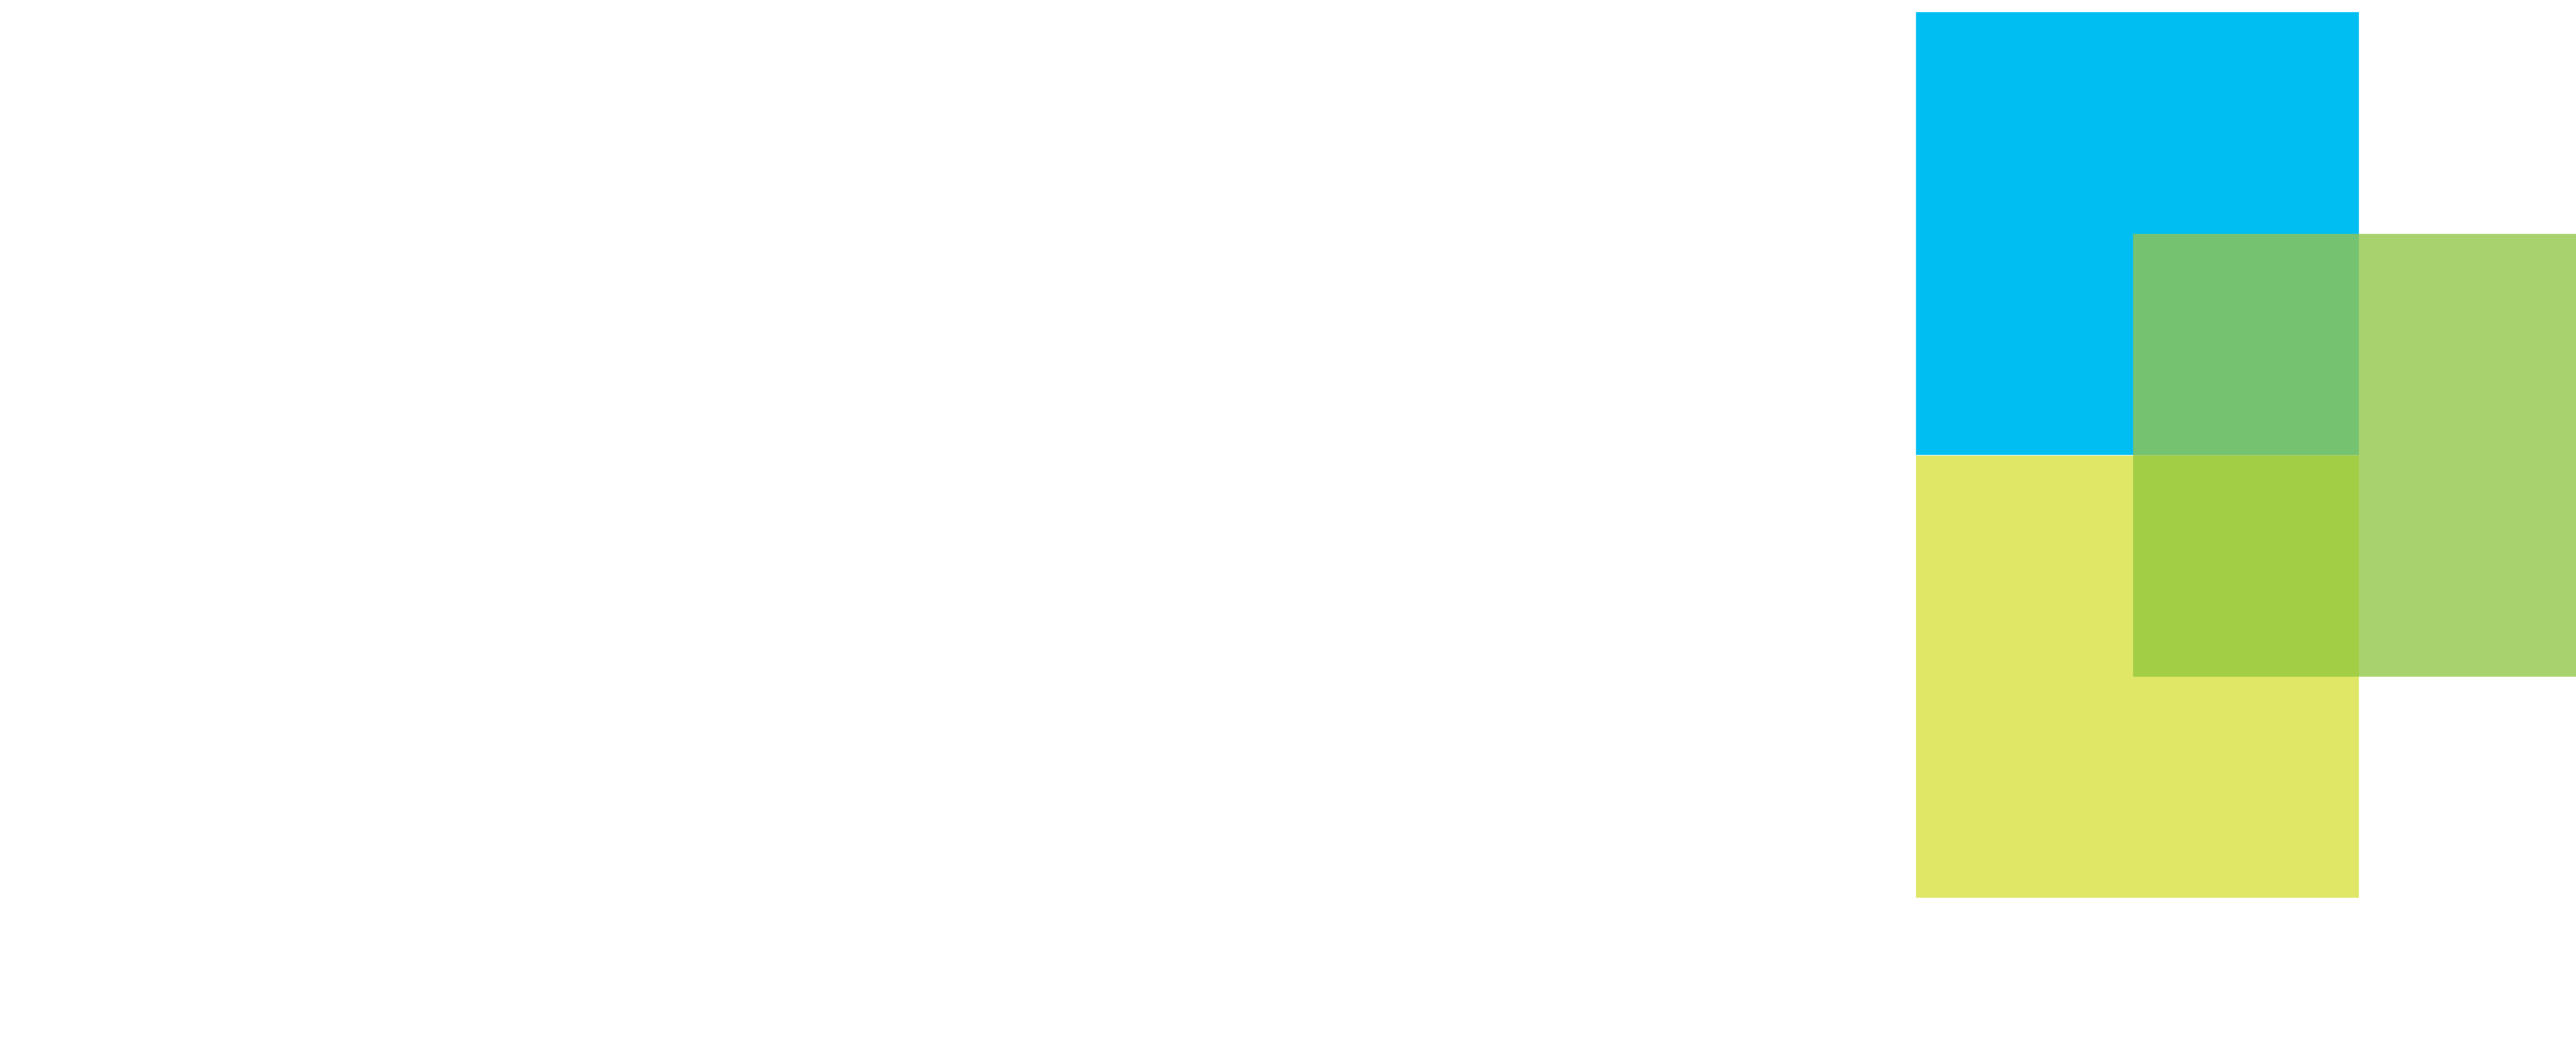 PRA Group